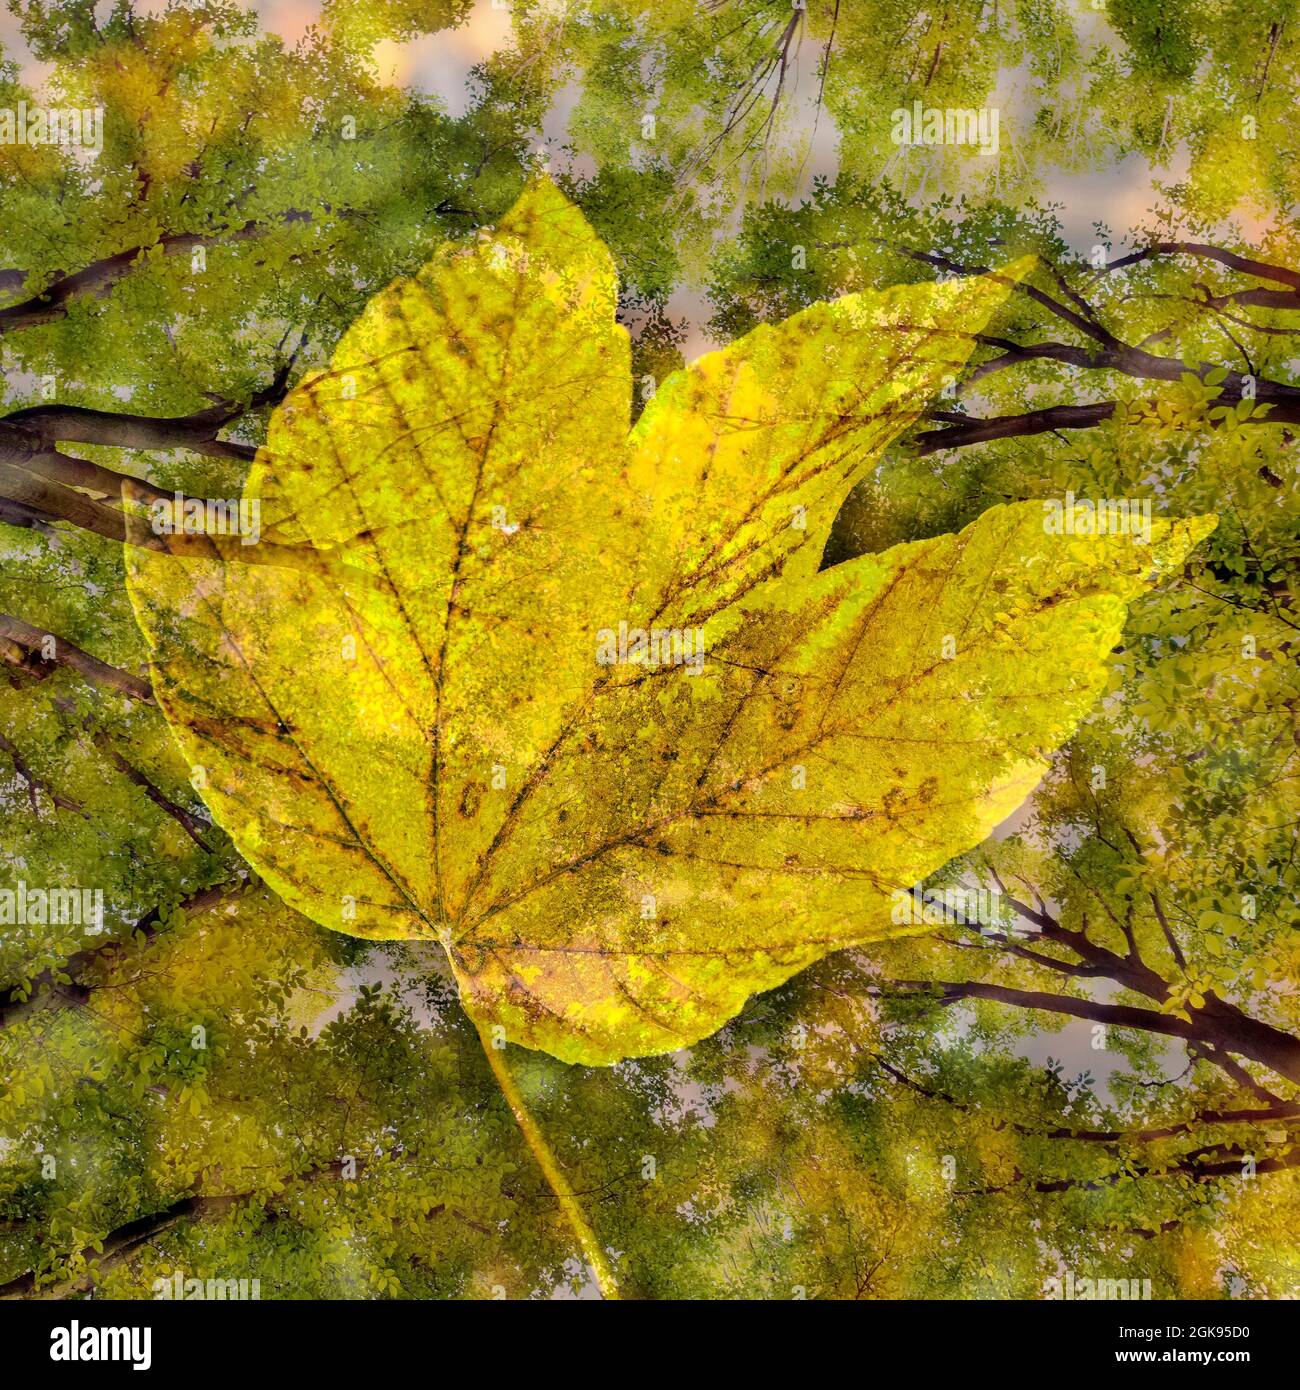 Hainbuche, Europäische Hainbuche (Carpinus betulus), Experimentelle Fotografie mit Hainbuche und Herbstblatt, Deutschland Stockfoto